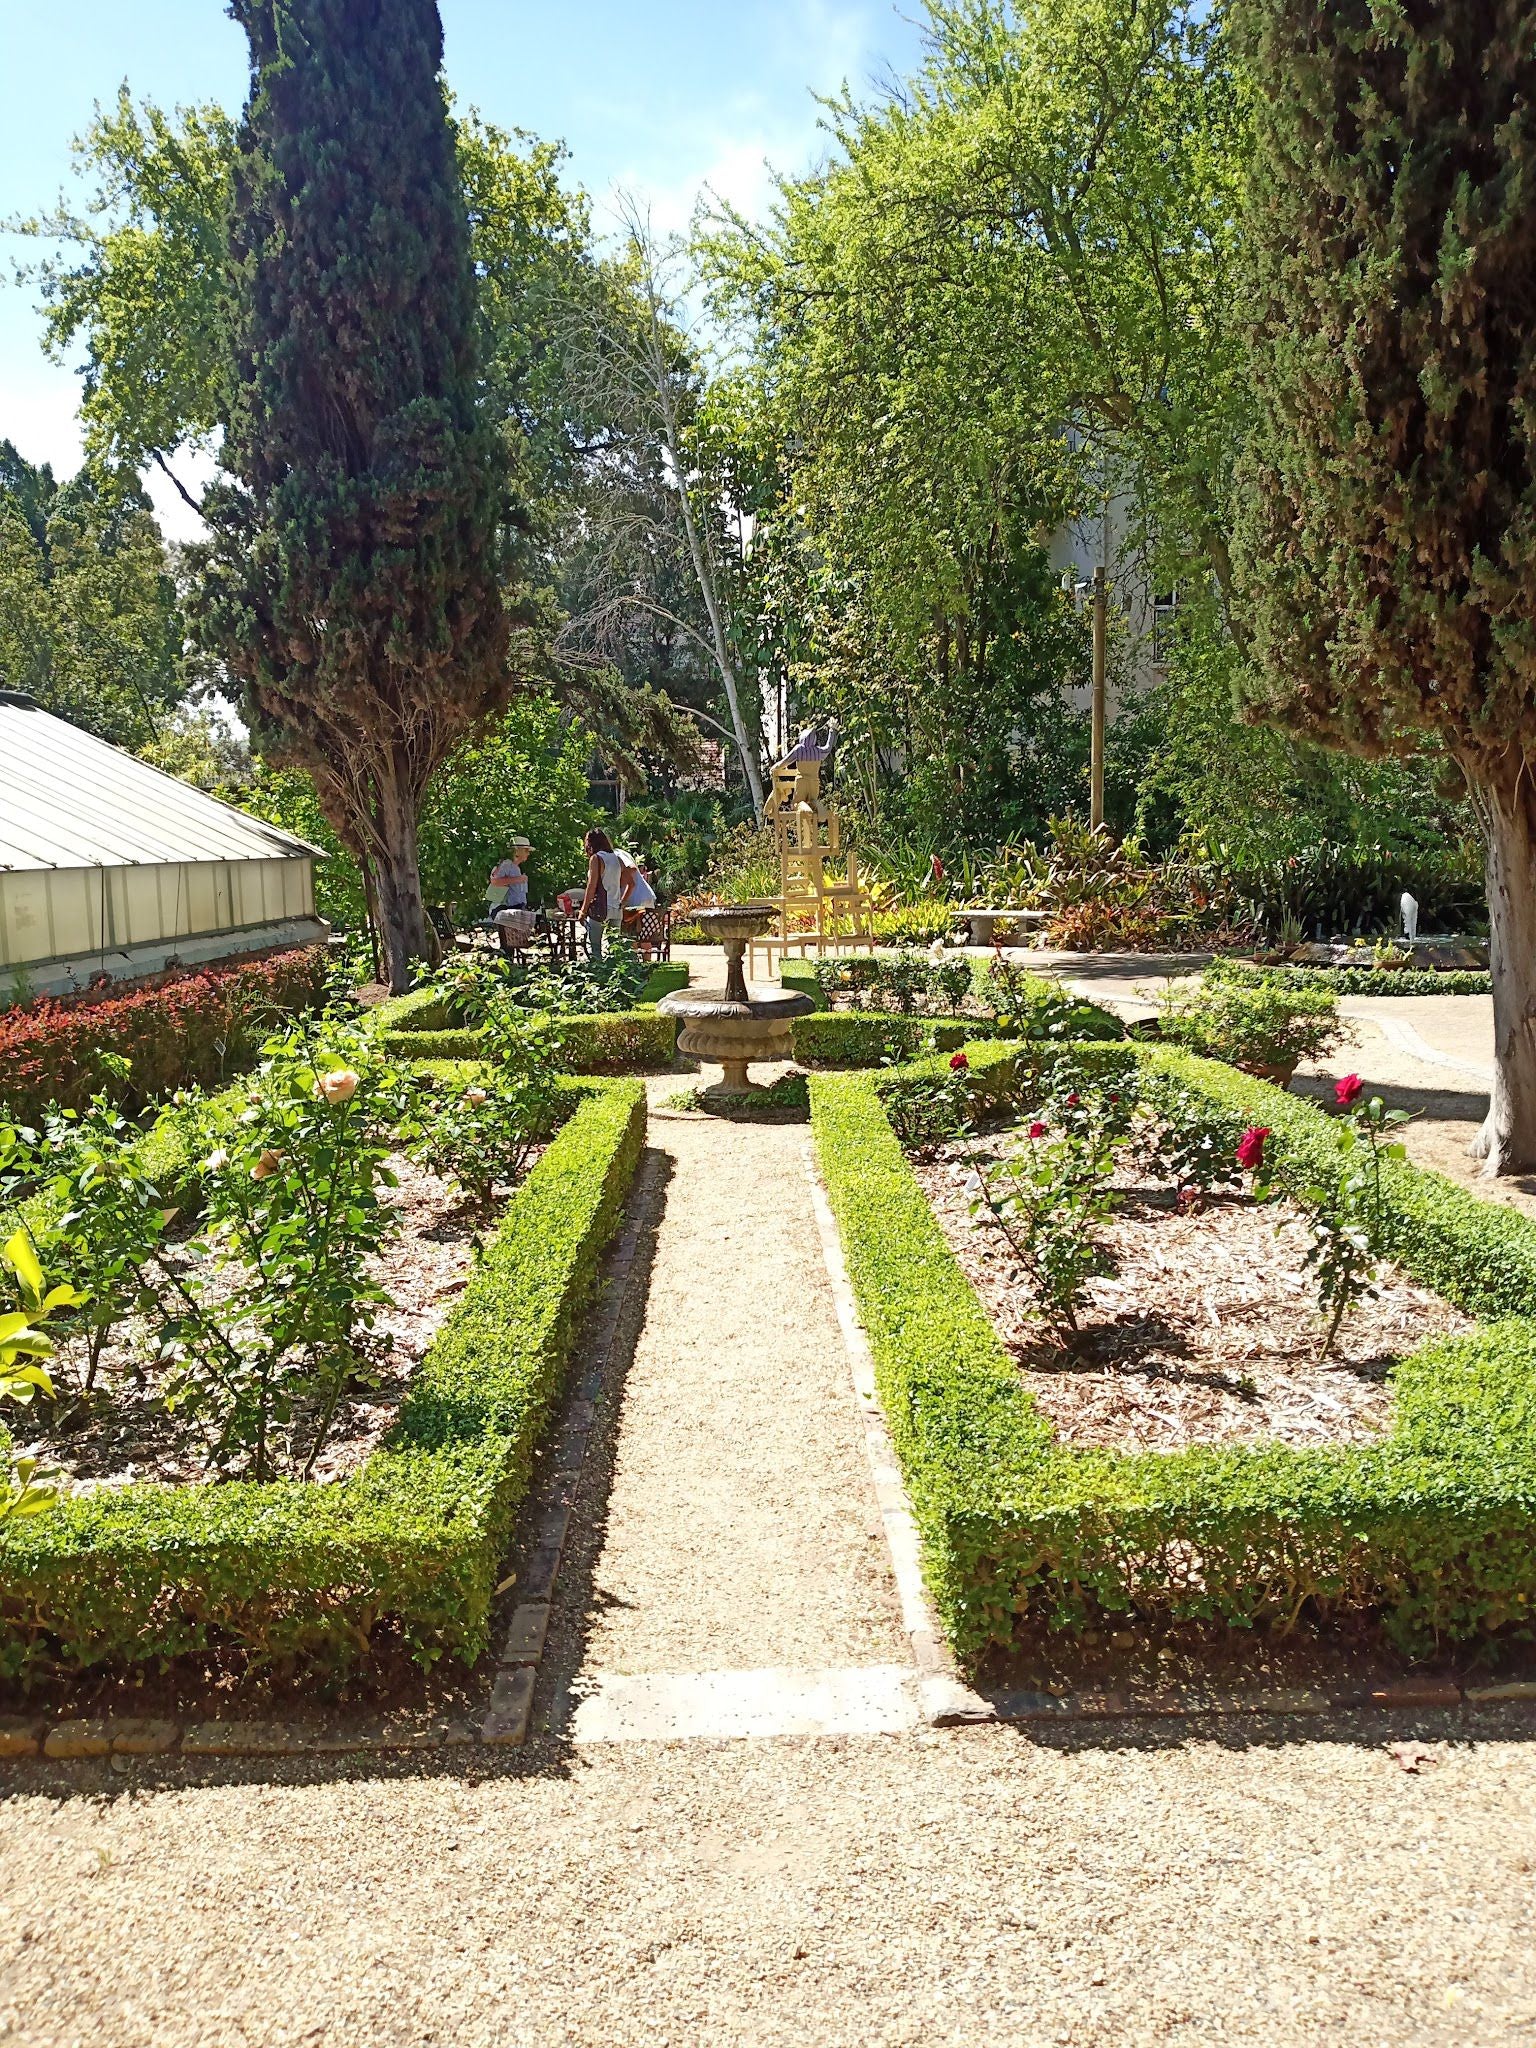  Stellenbosch University Botanical Garden